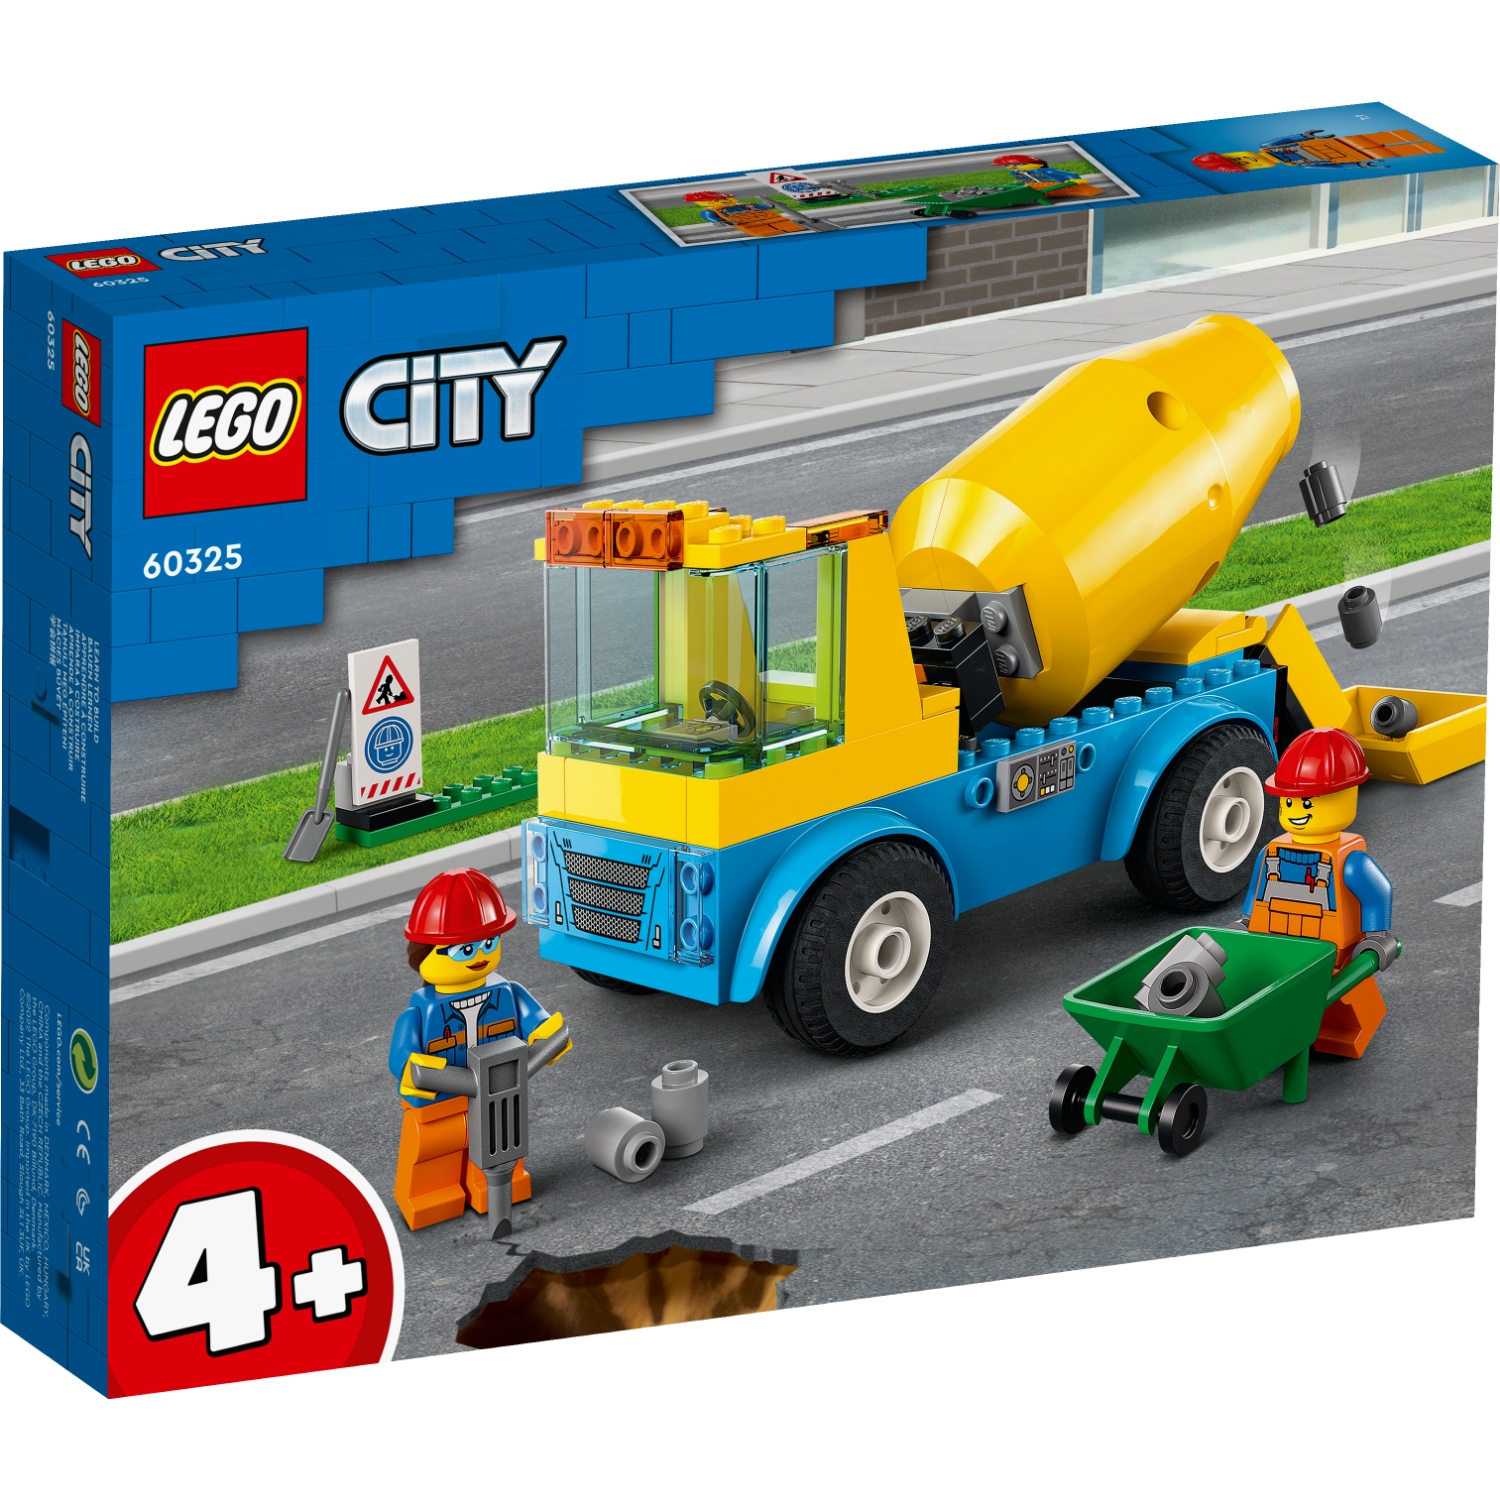 LEGO CITY 60325 CEMENTWAGEN - 411 1556 - 527096